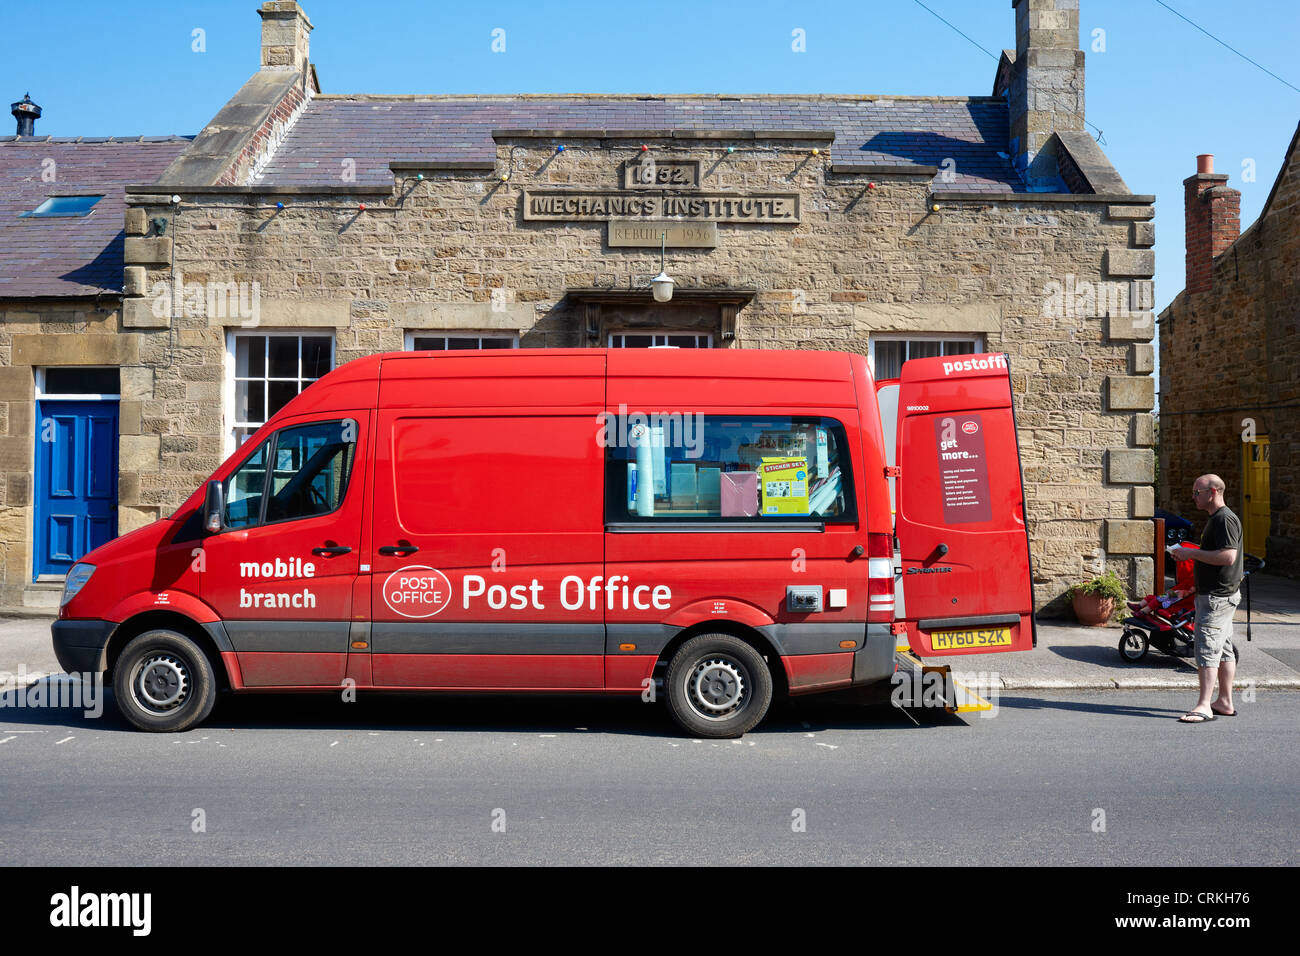 Bureau de poste mobile van visite le village rural de Kirkby Malzeard dans Yorkshire du Nord UK Banque D'Images